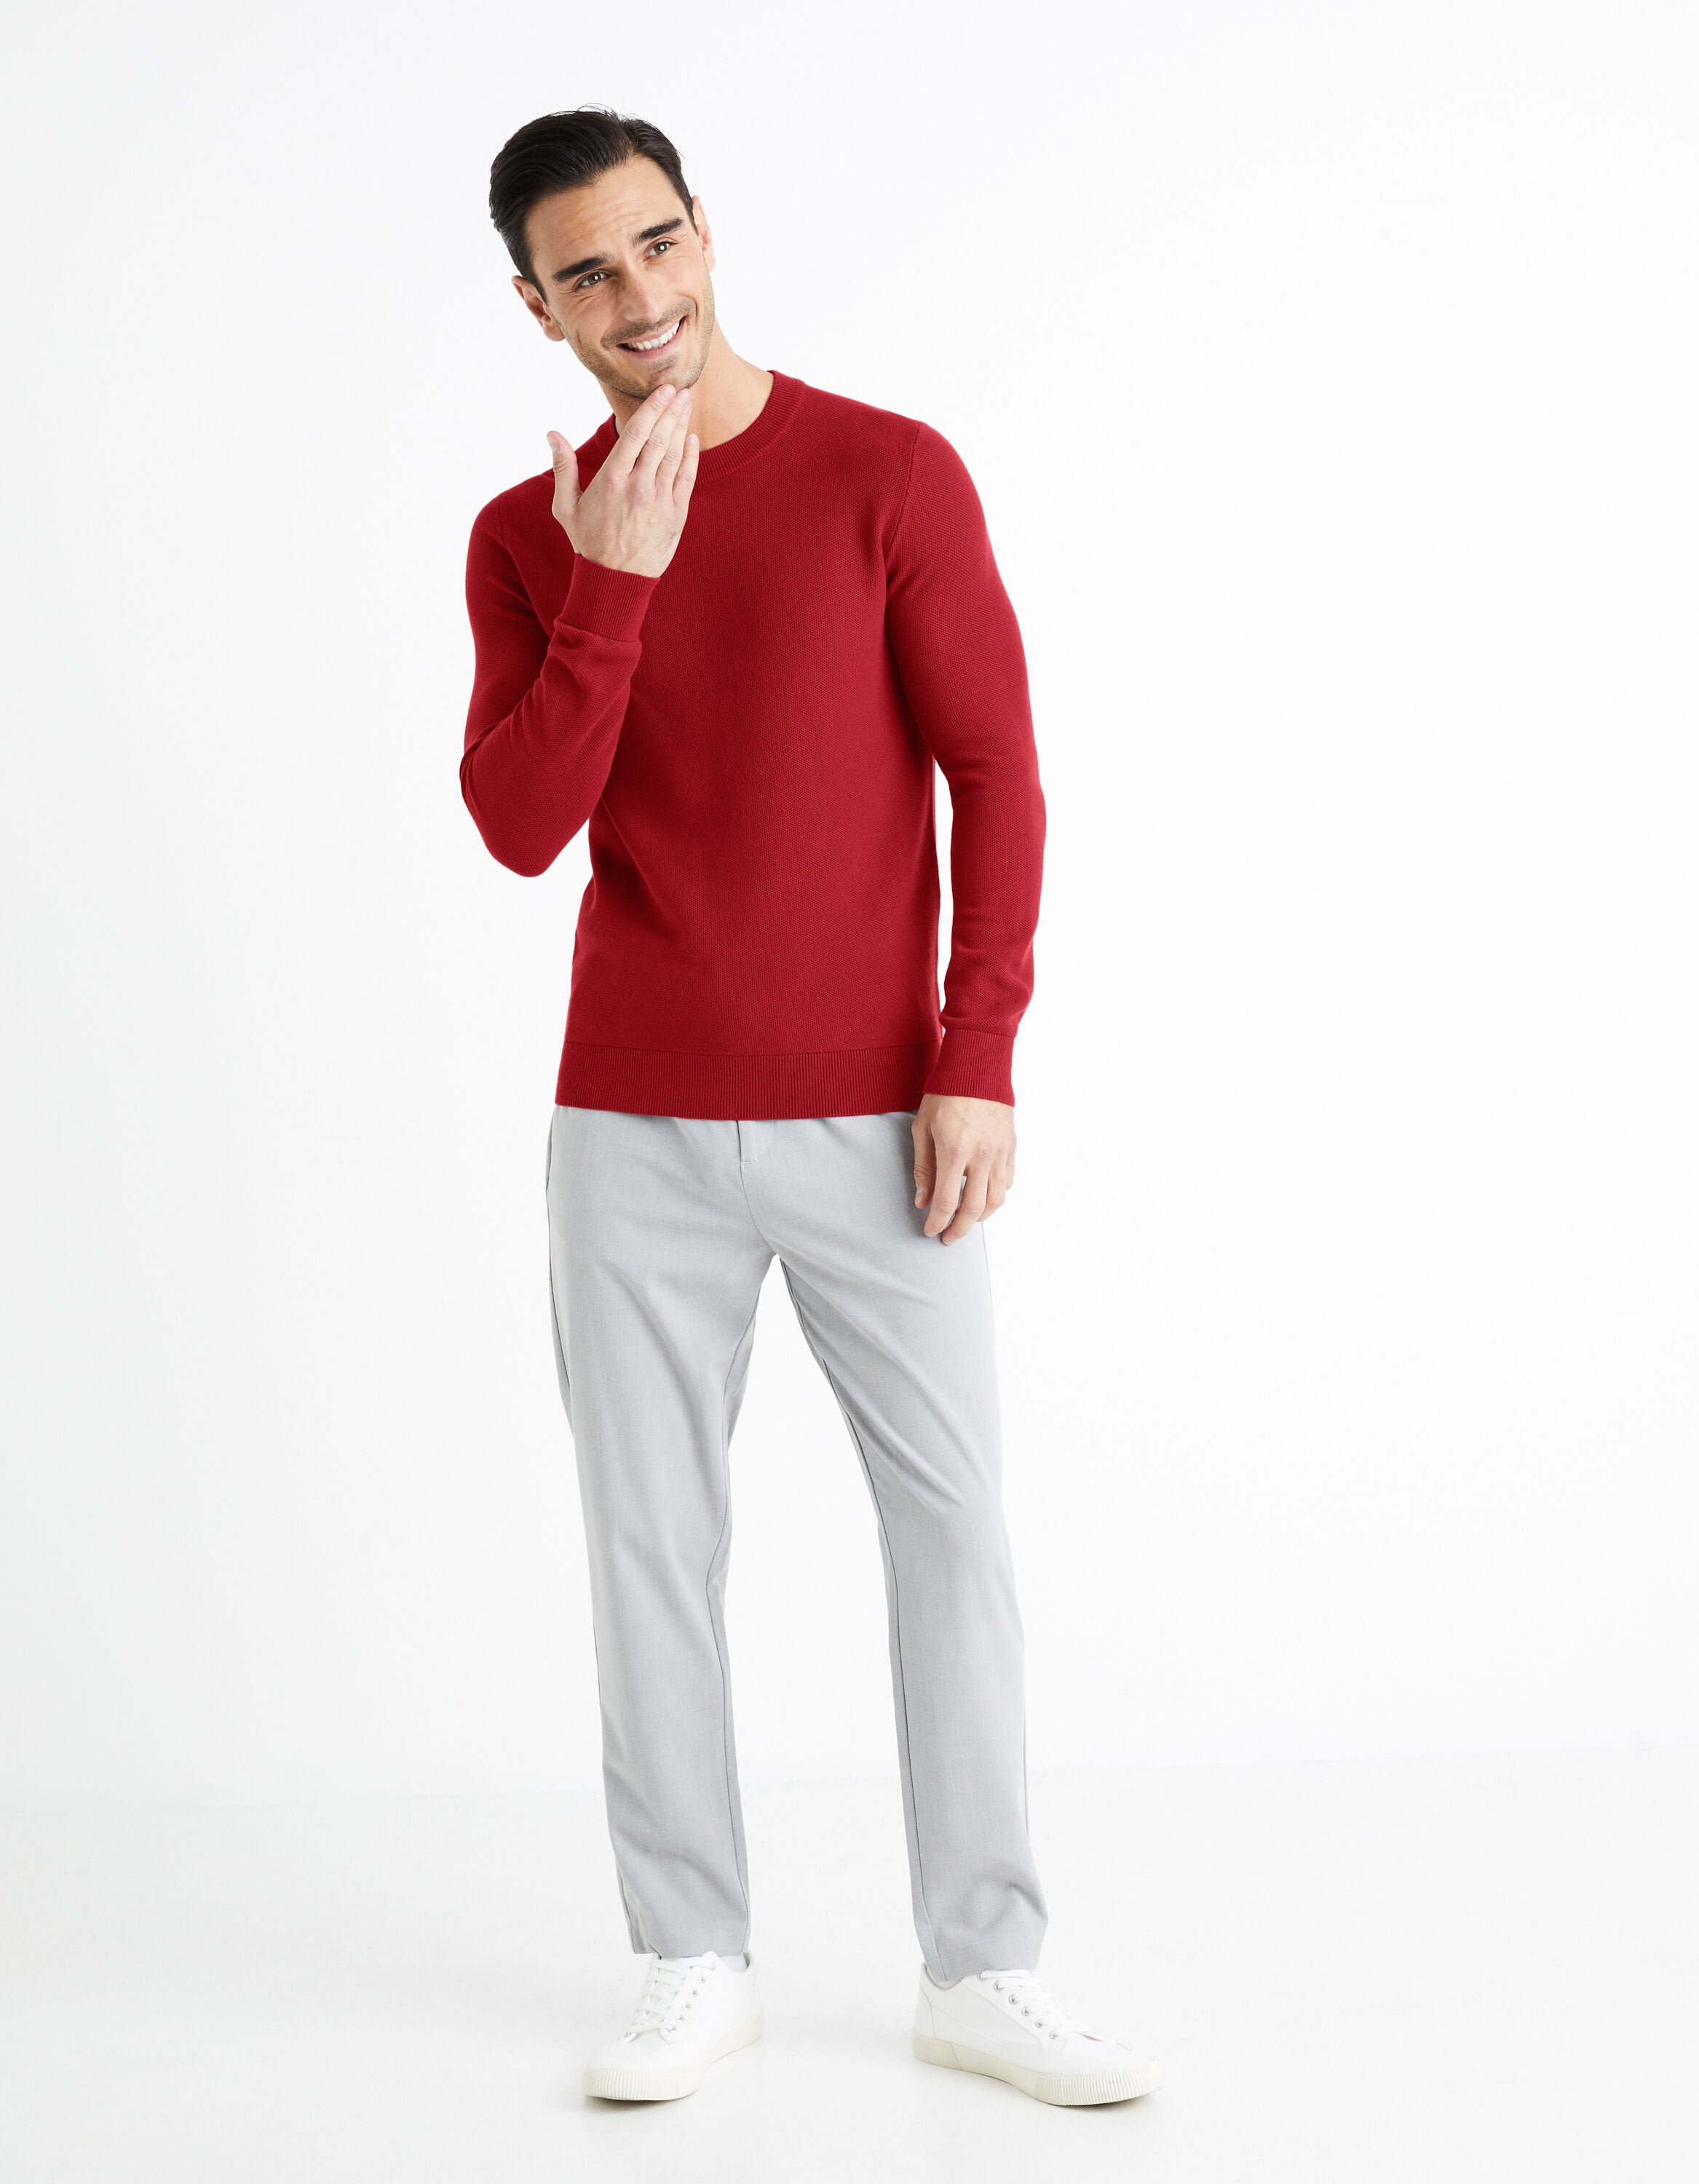 100% Cotton Round Neck Sweater - Burgundy_BEPIC_BURGUNDY_03